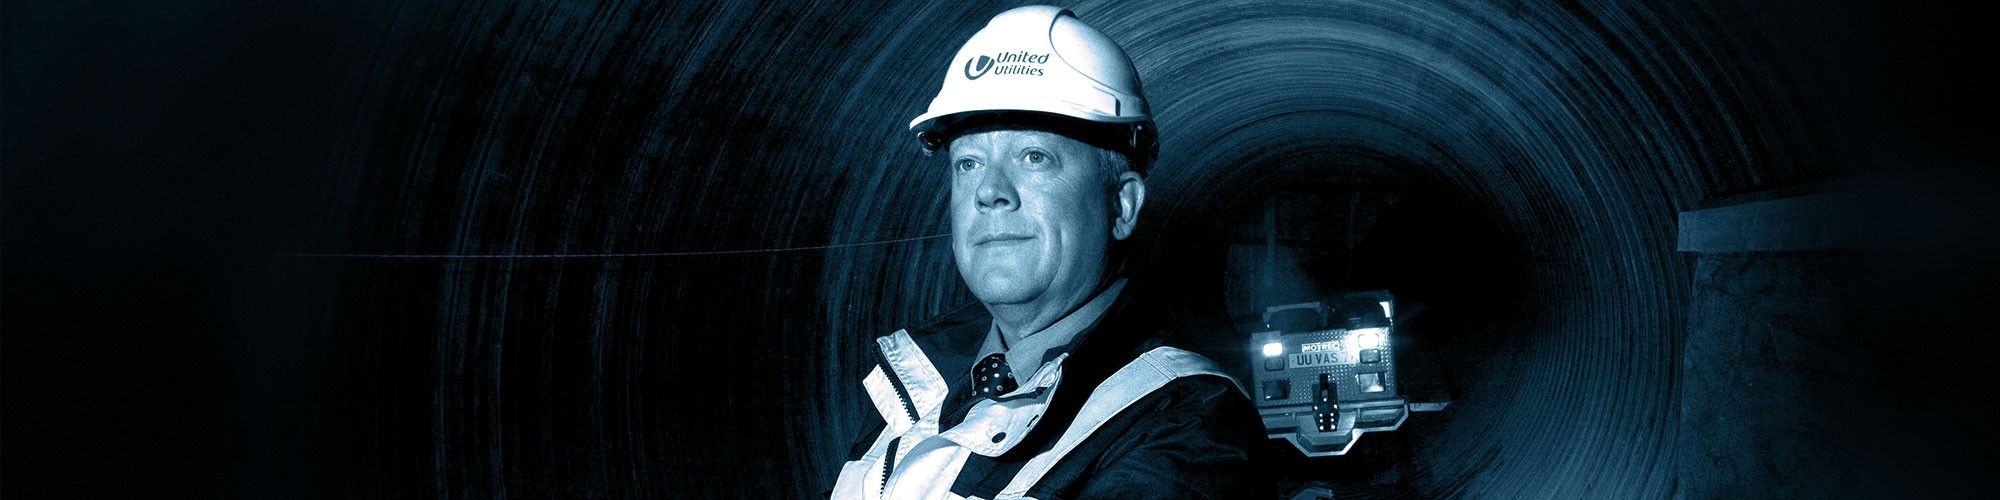 Working safely 100 feet underground | Motrec